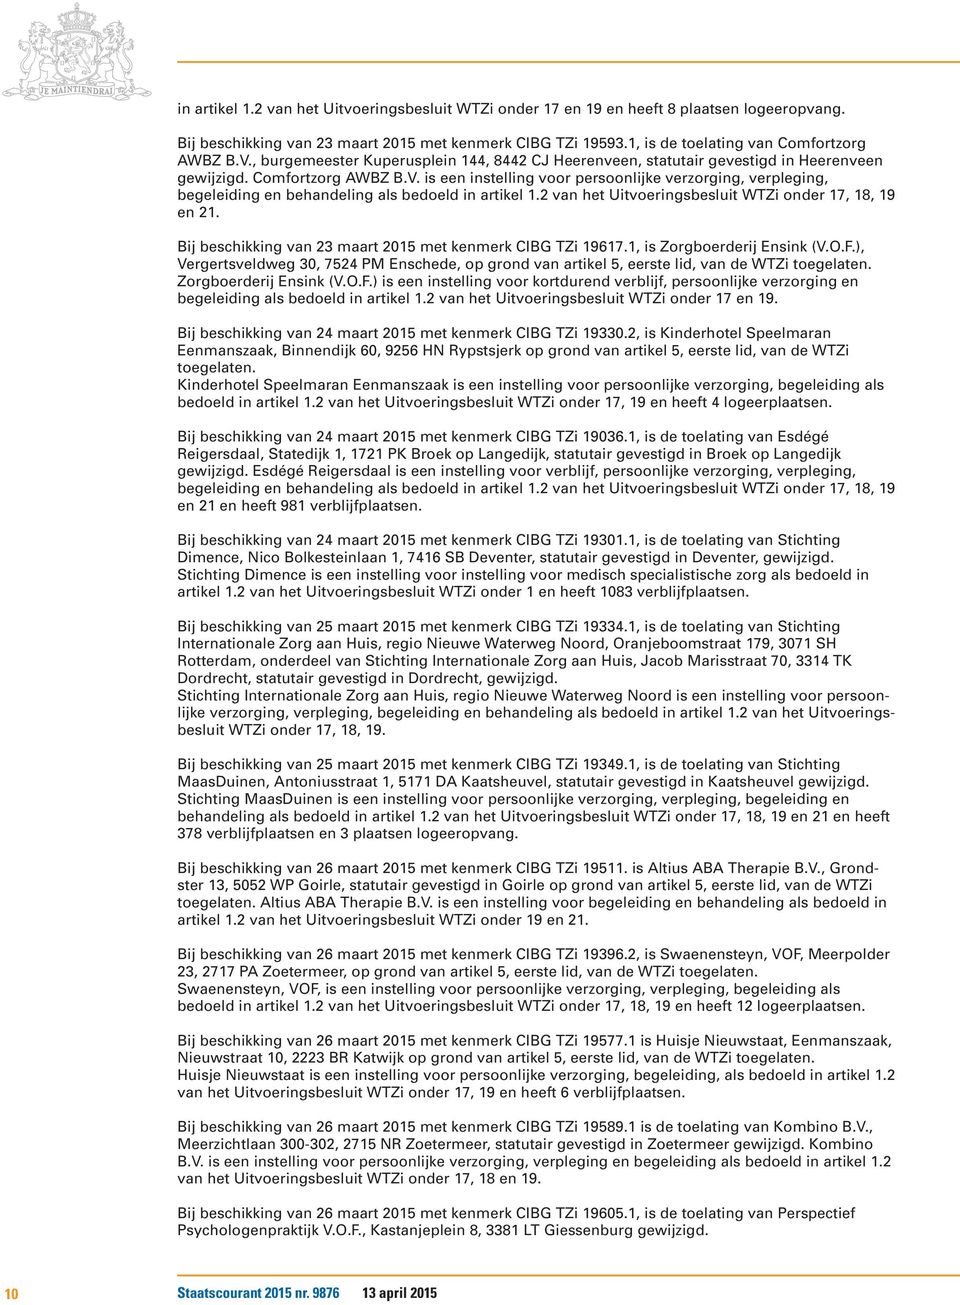 2 van het Uitvoeringsbesluit WTZi onder 17, 18, 19 en 21. Bij beschikking van 23 maart 2015 met kenmerk CIBG TZi 19617.1, is Zorgboerderij Ensink (V.O.F.